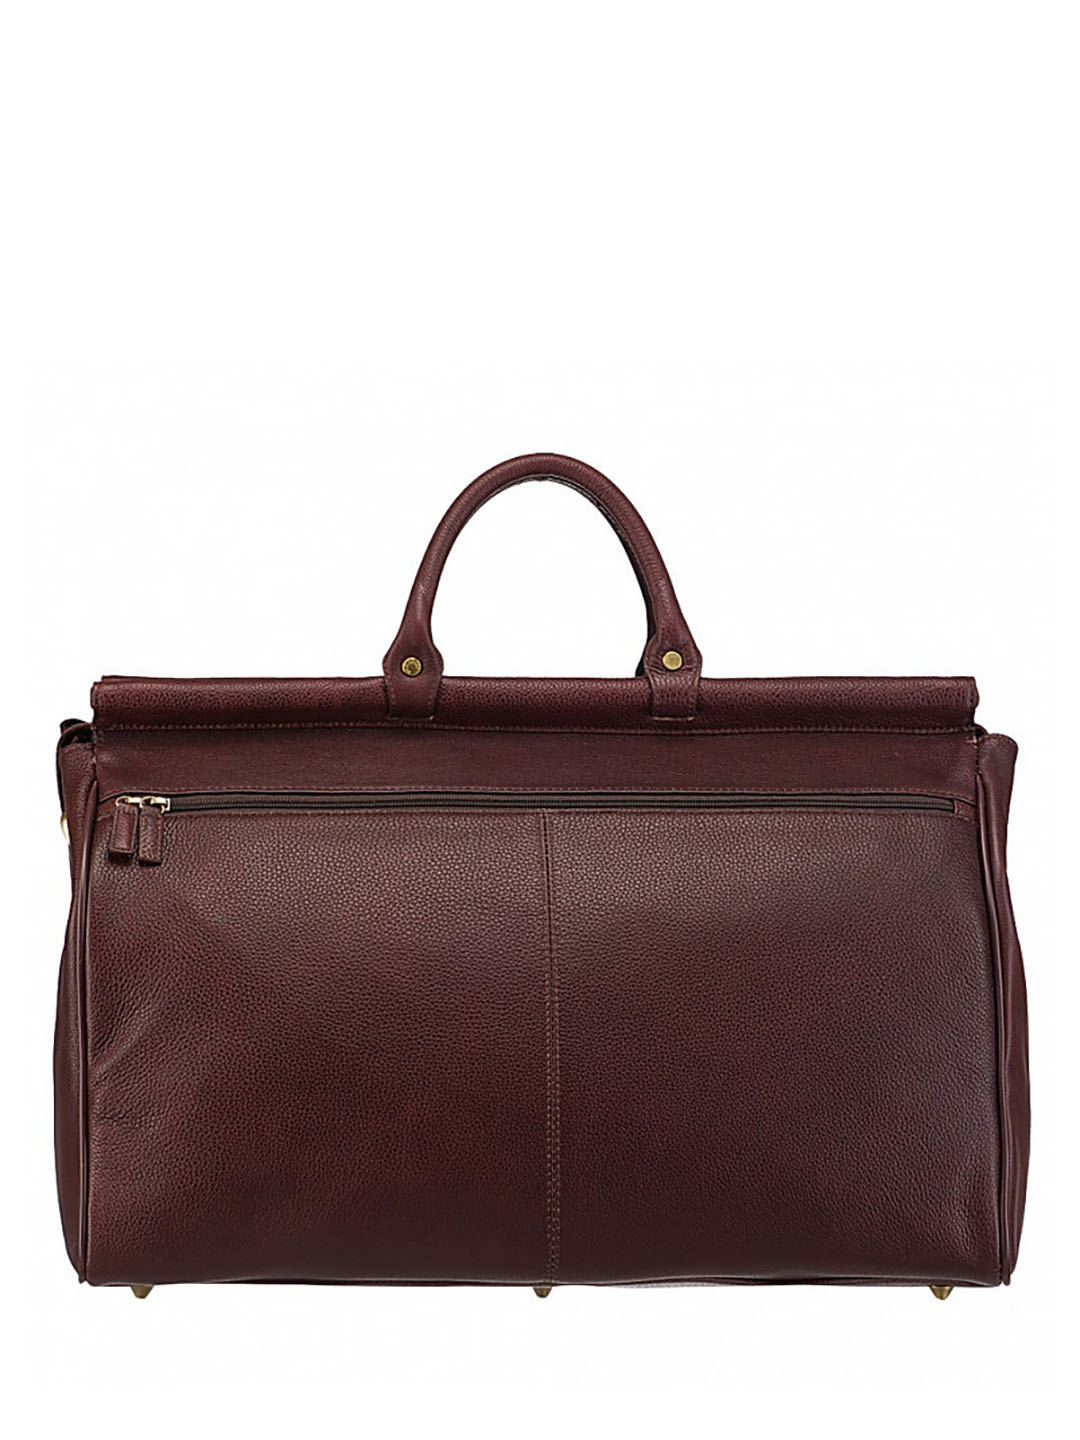 Фото Вместительная дорожная сумка из натуральной кожи коричневого цвета Саквояжи